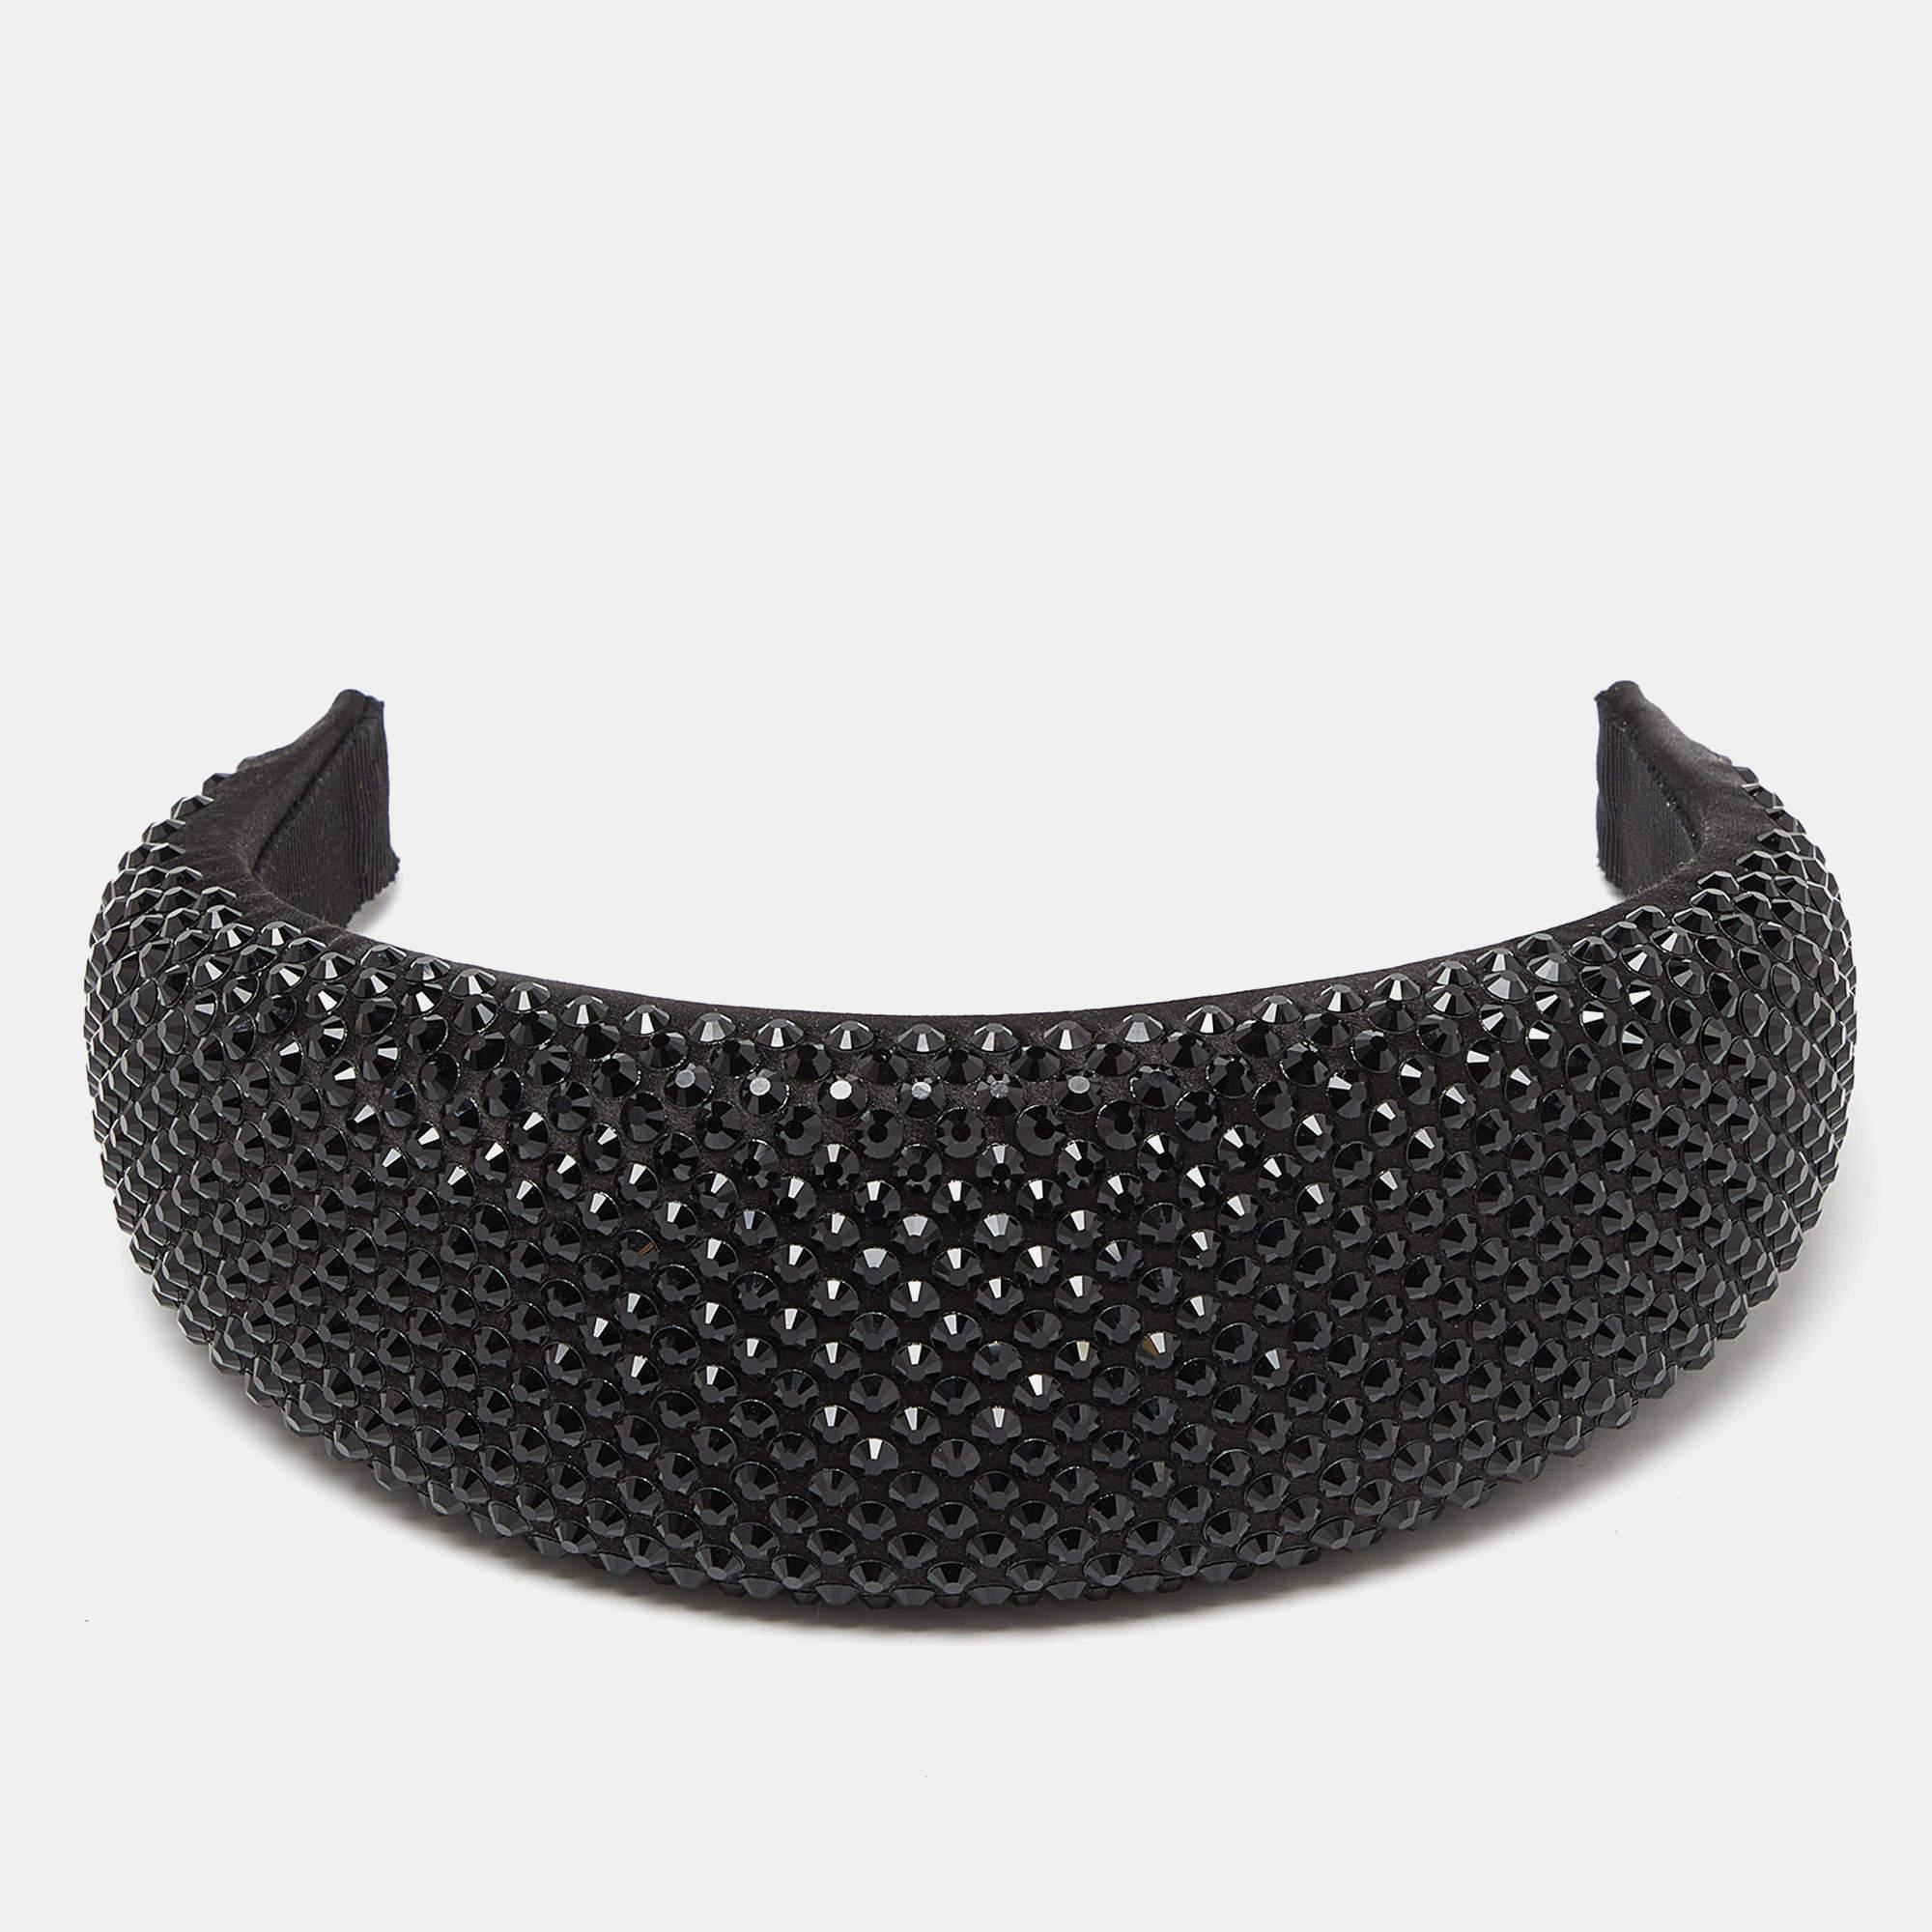 Ce joli bandeau de Prada est un accessoire indispensable ! Recouvert de cristaux noirs, ce bandeau est facile à mettre et s'associe parfaitement aux tenues décontractées et chics ainsi qu'aux robes de soirée.

Comprend : Sac à poussière original

